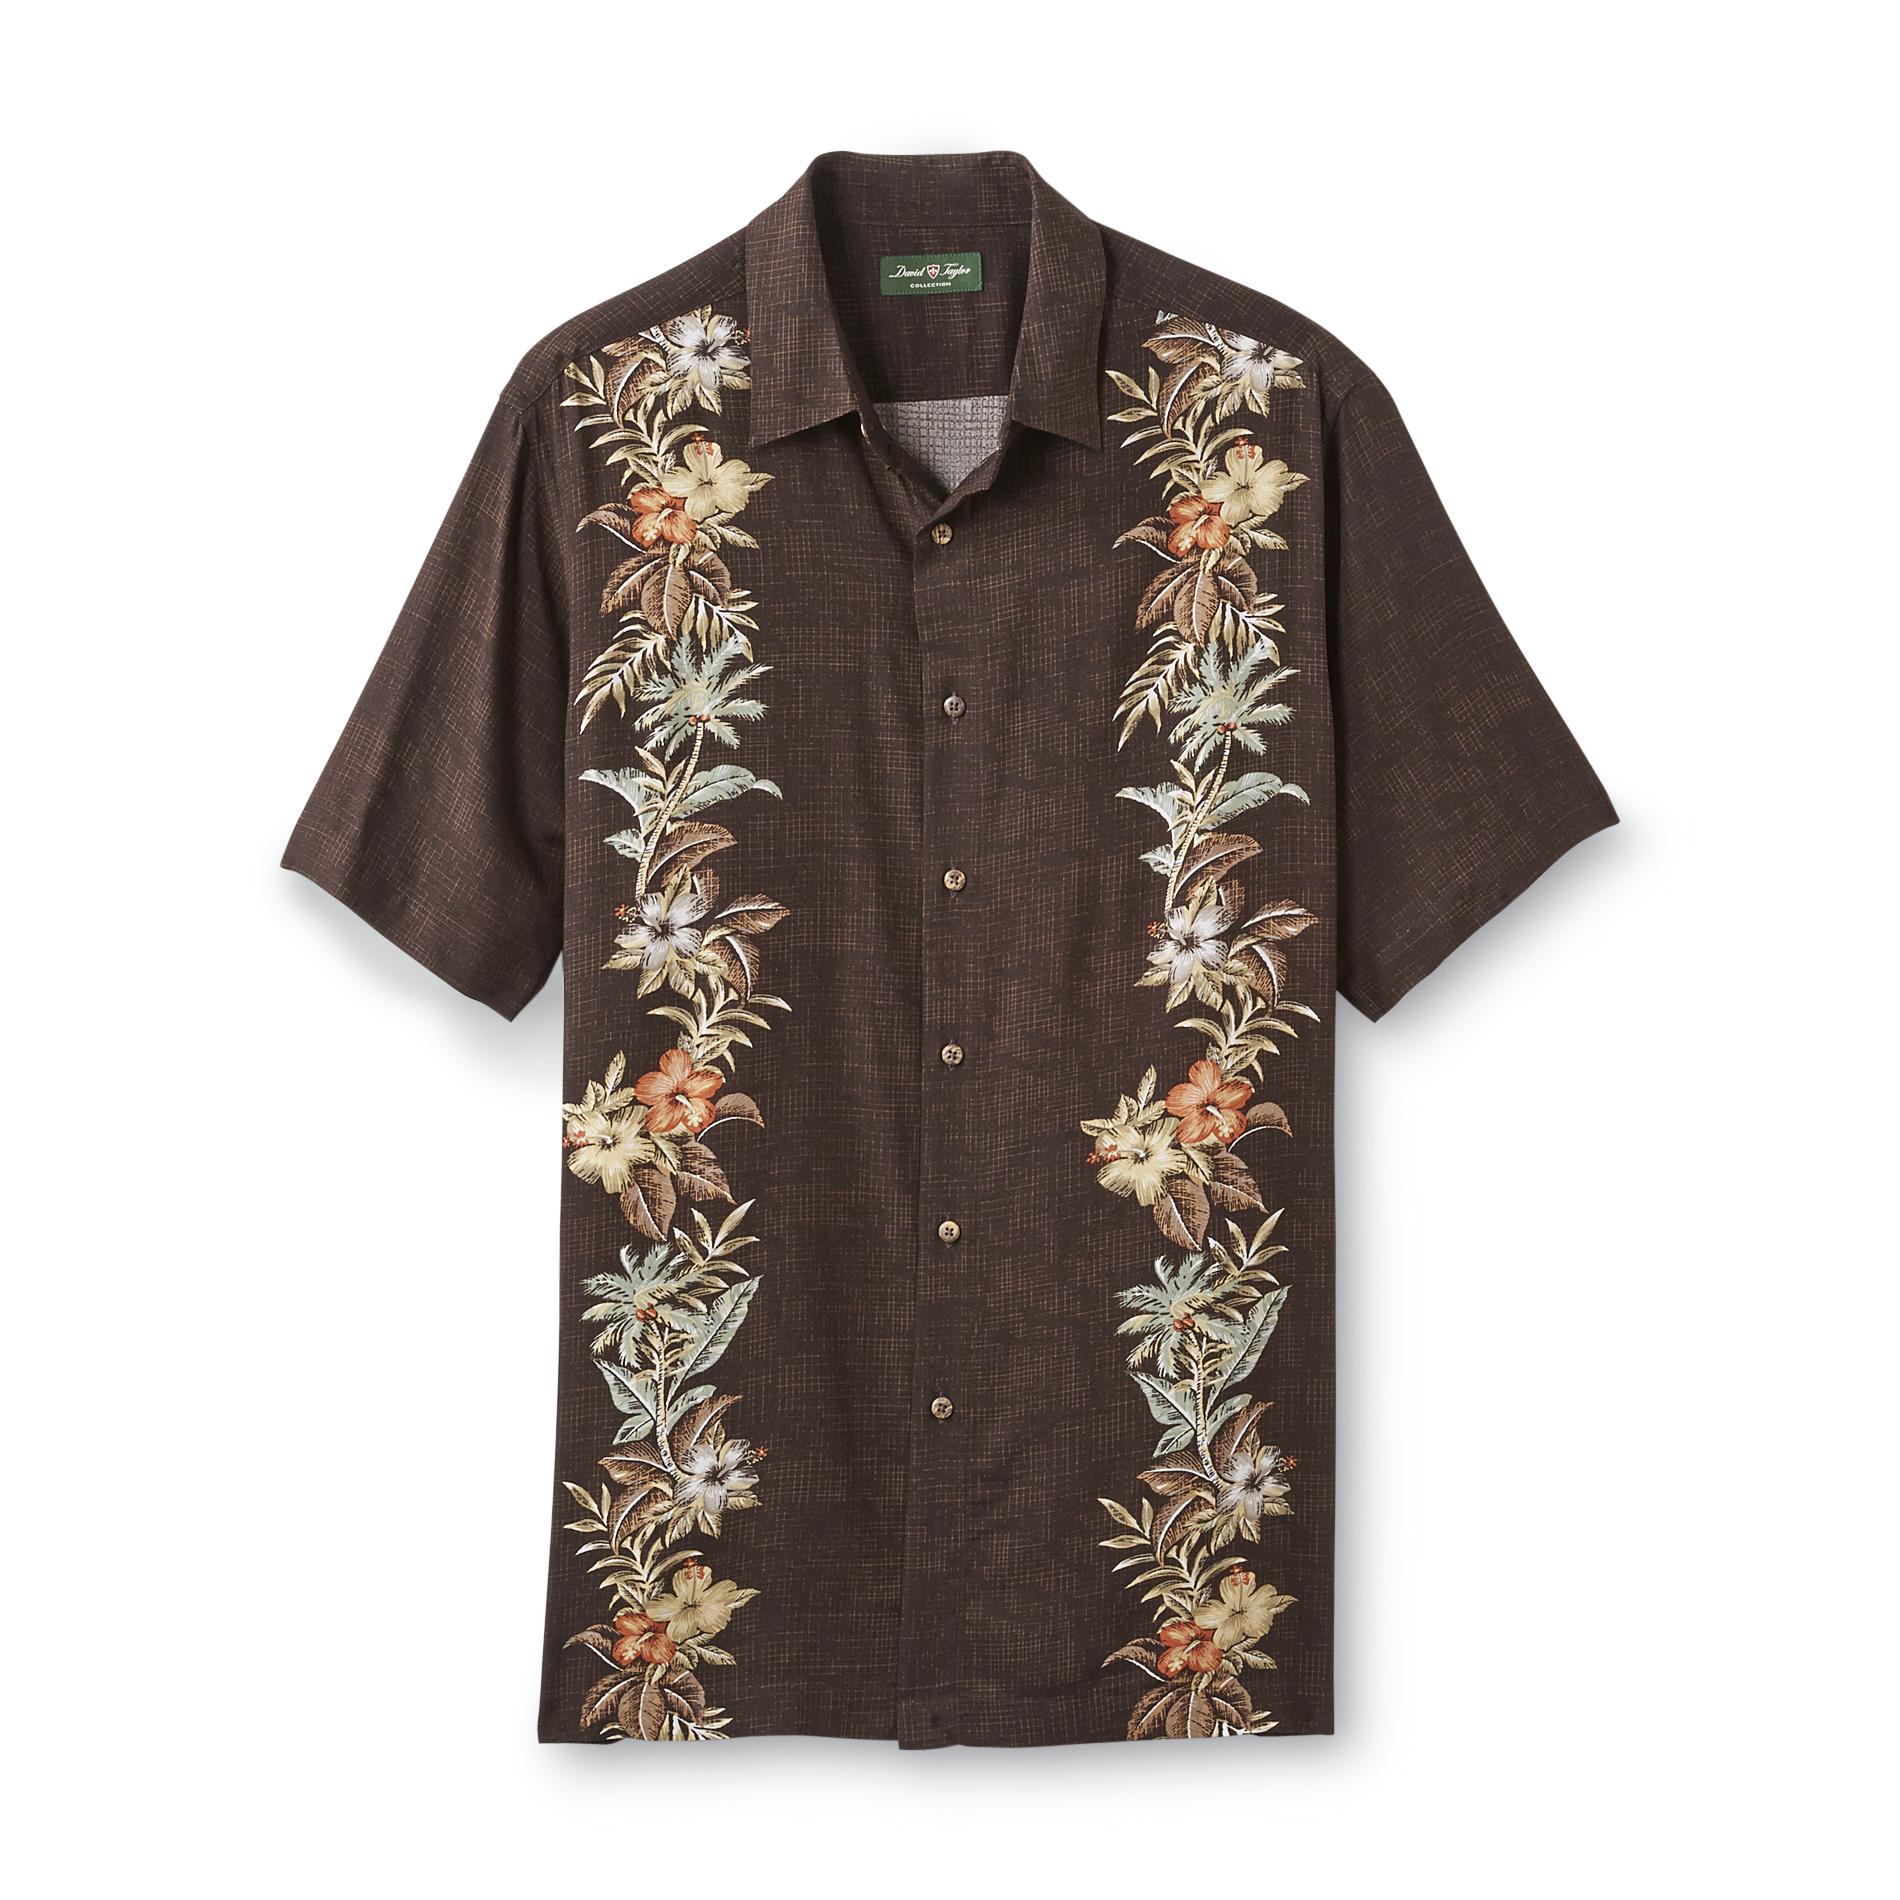 David Taylor Collection Men's Cabana Shirt - Tropical